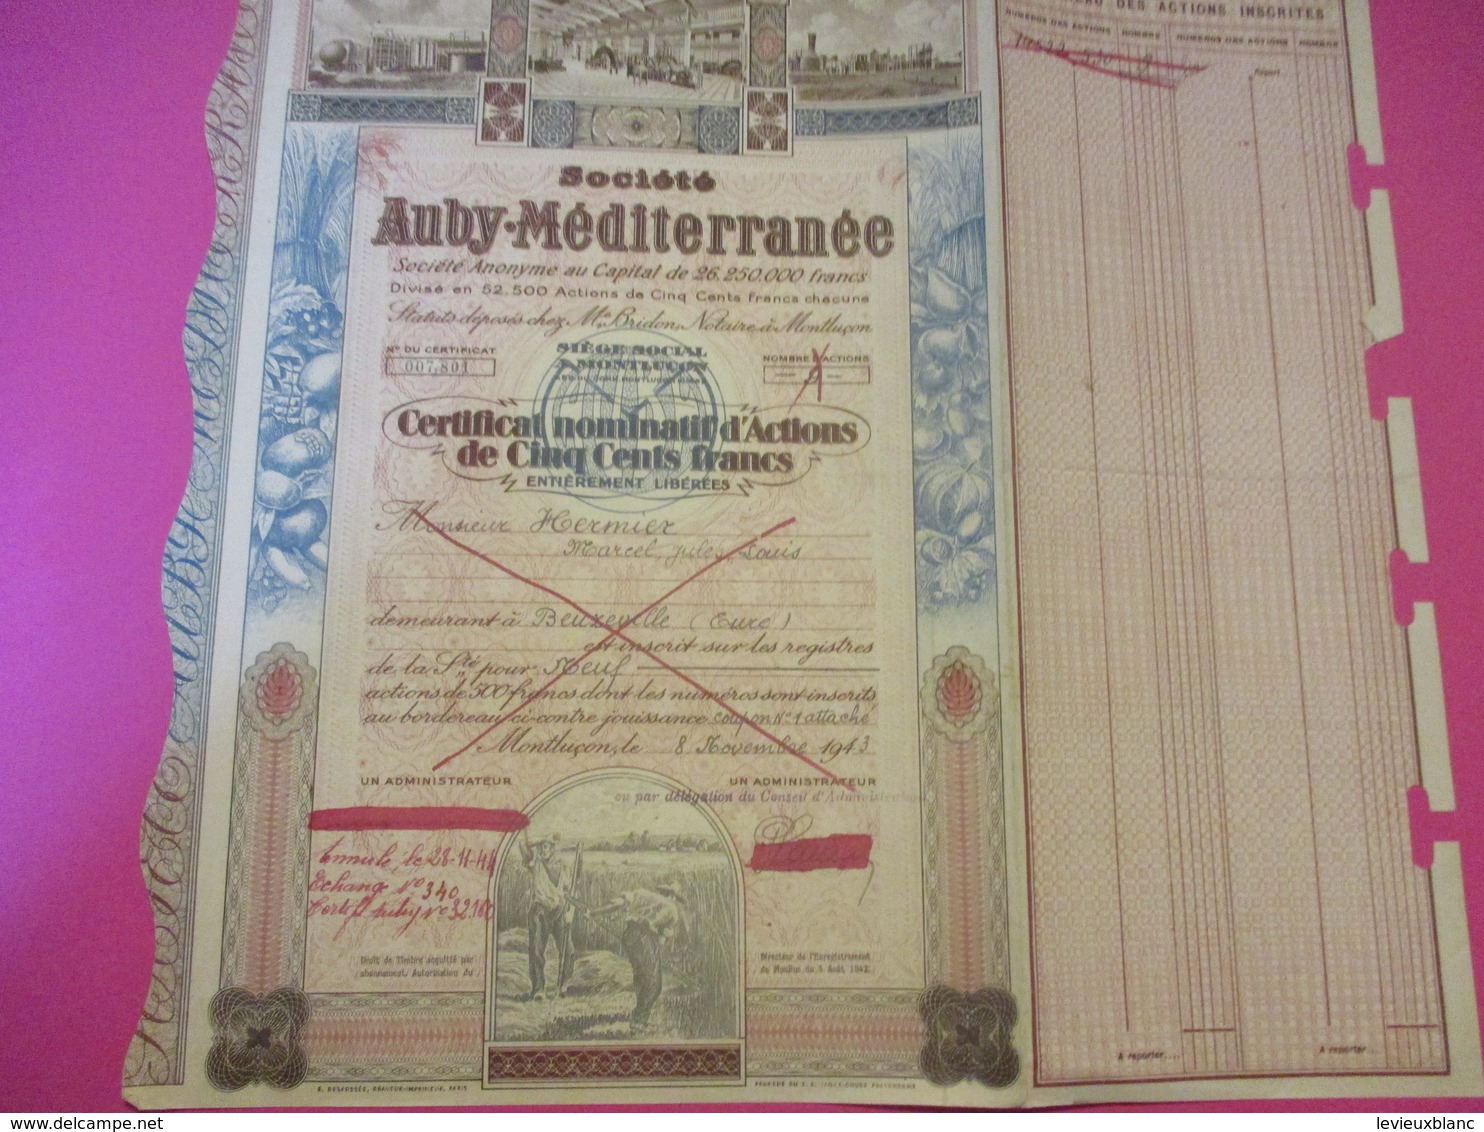 Certificat Nominatif D'Actions De 500 Francs Entiérement Libérées/Sté AUBY-MEDITERRANEE/MONTLUçON/ /1943       ACT209 - Landbouw